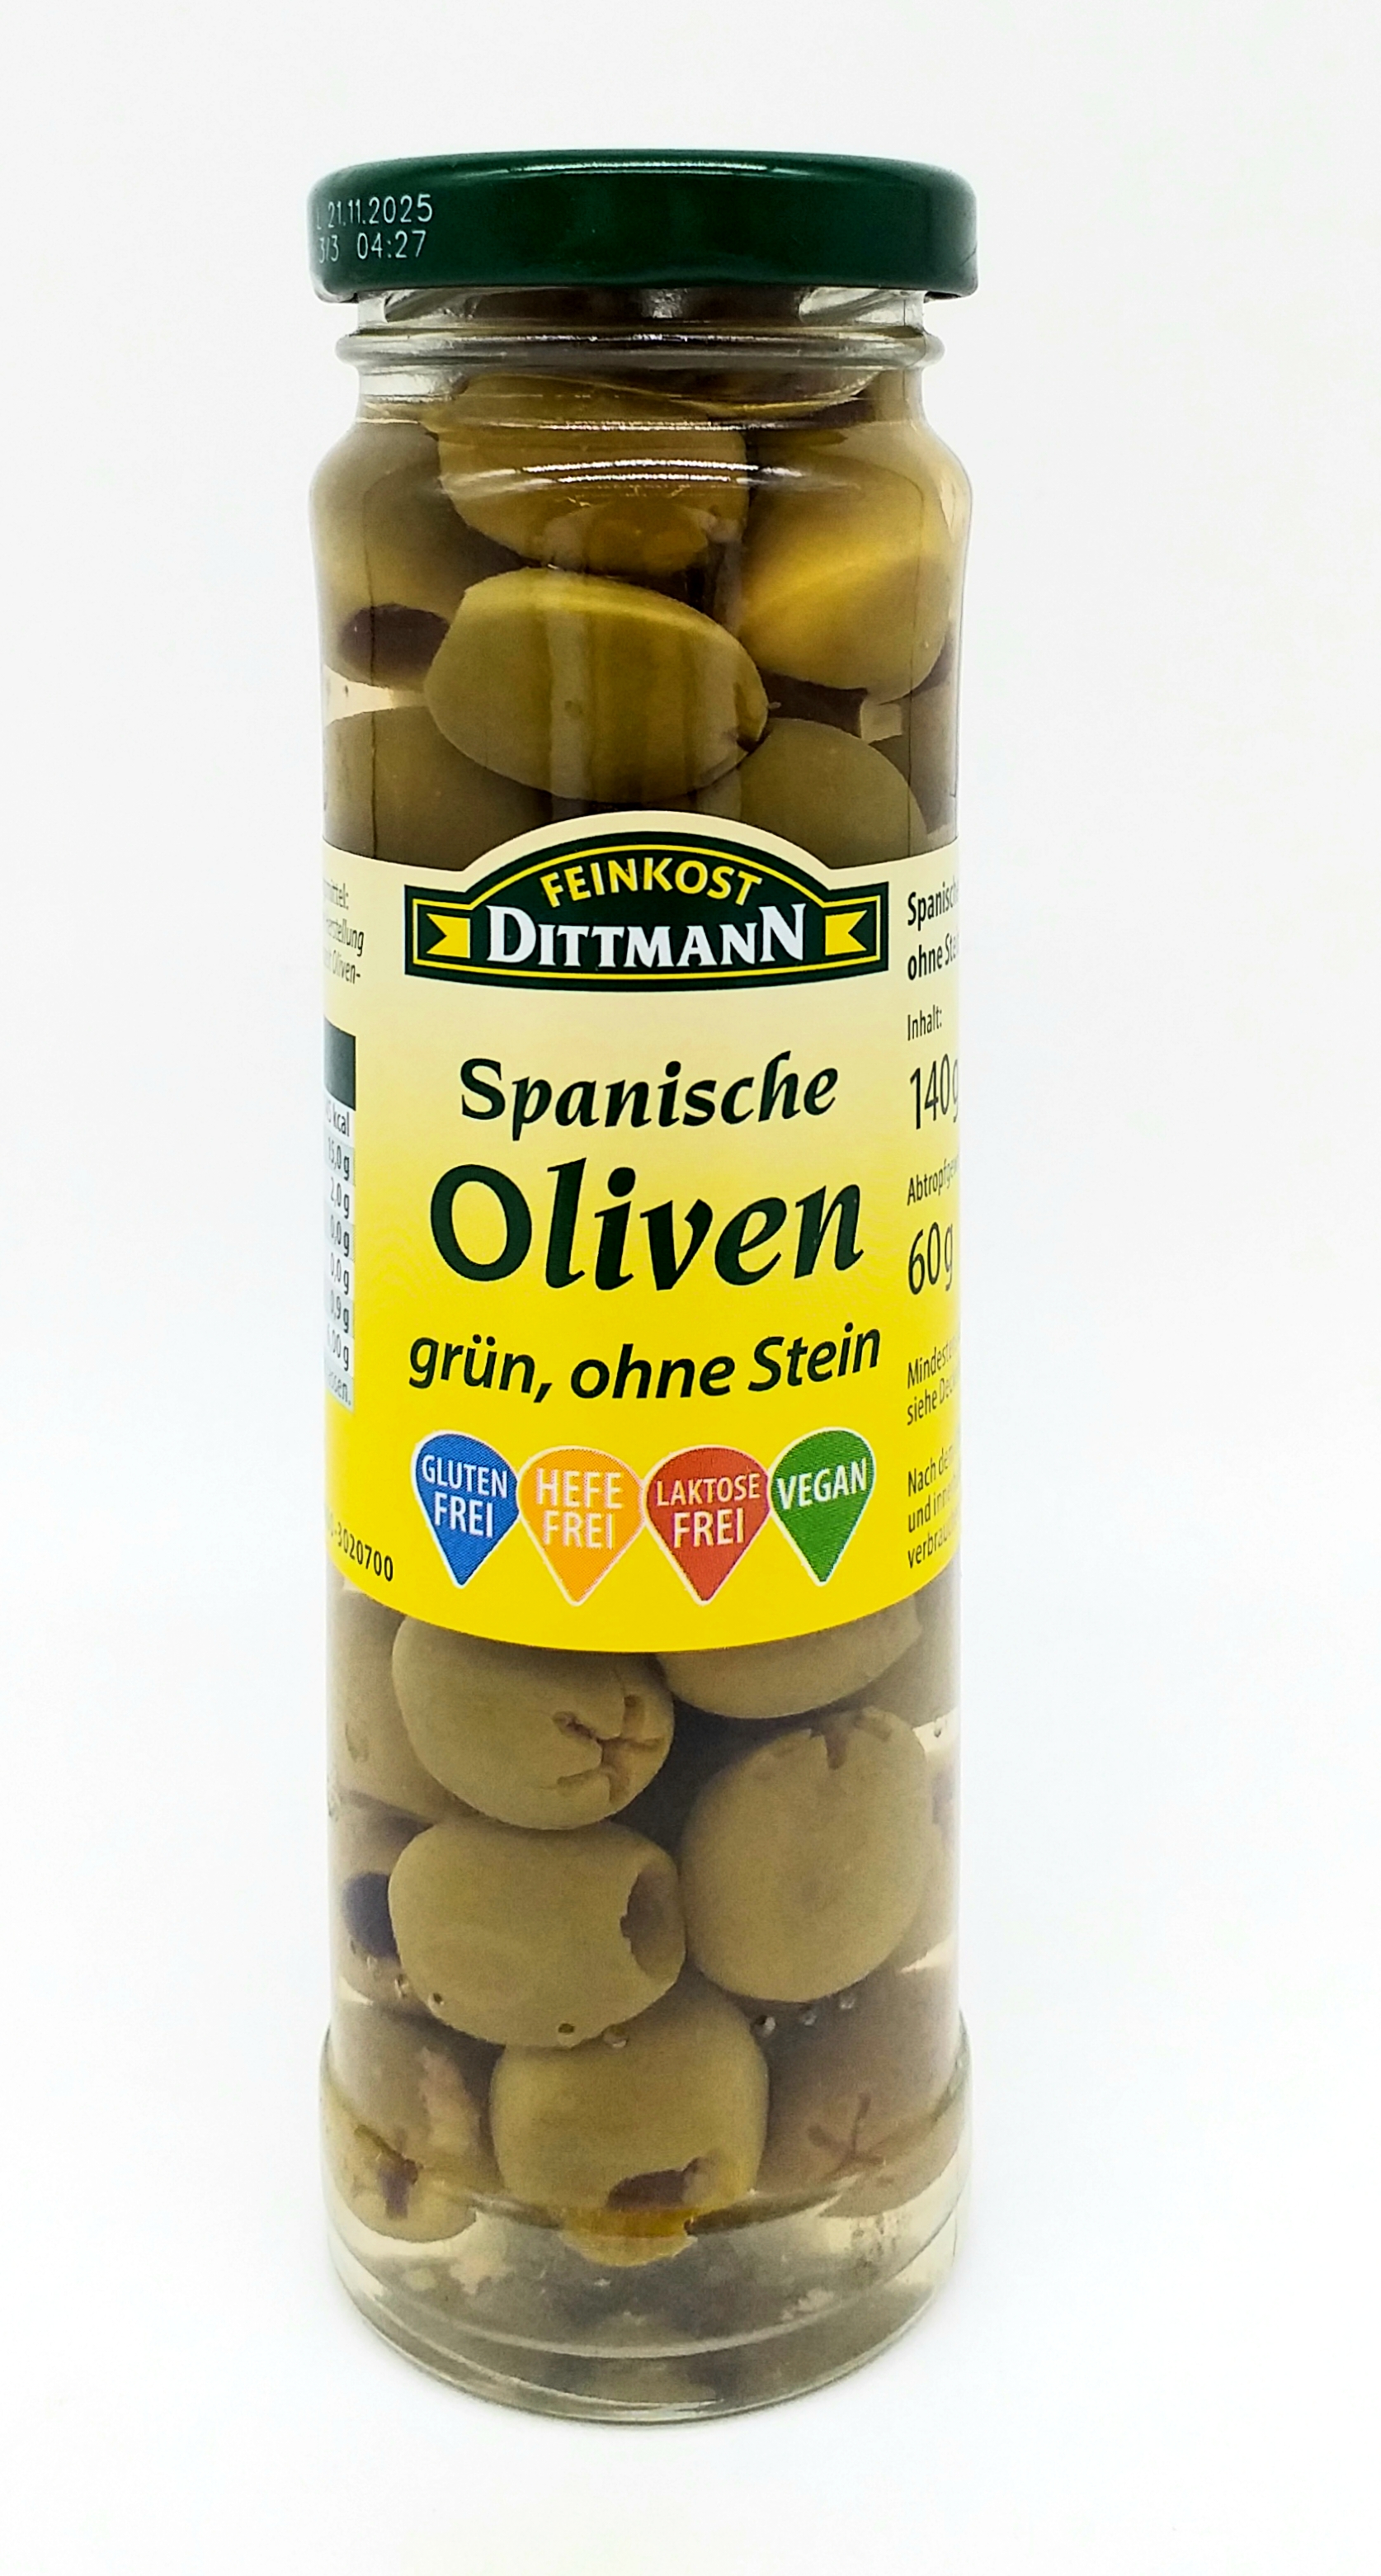 Feinkost Dittmann Oliven grün ohne Stein 60g